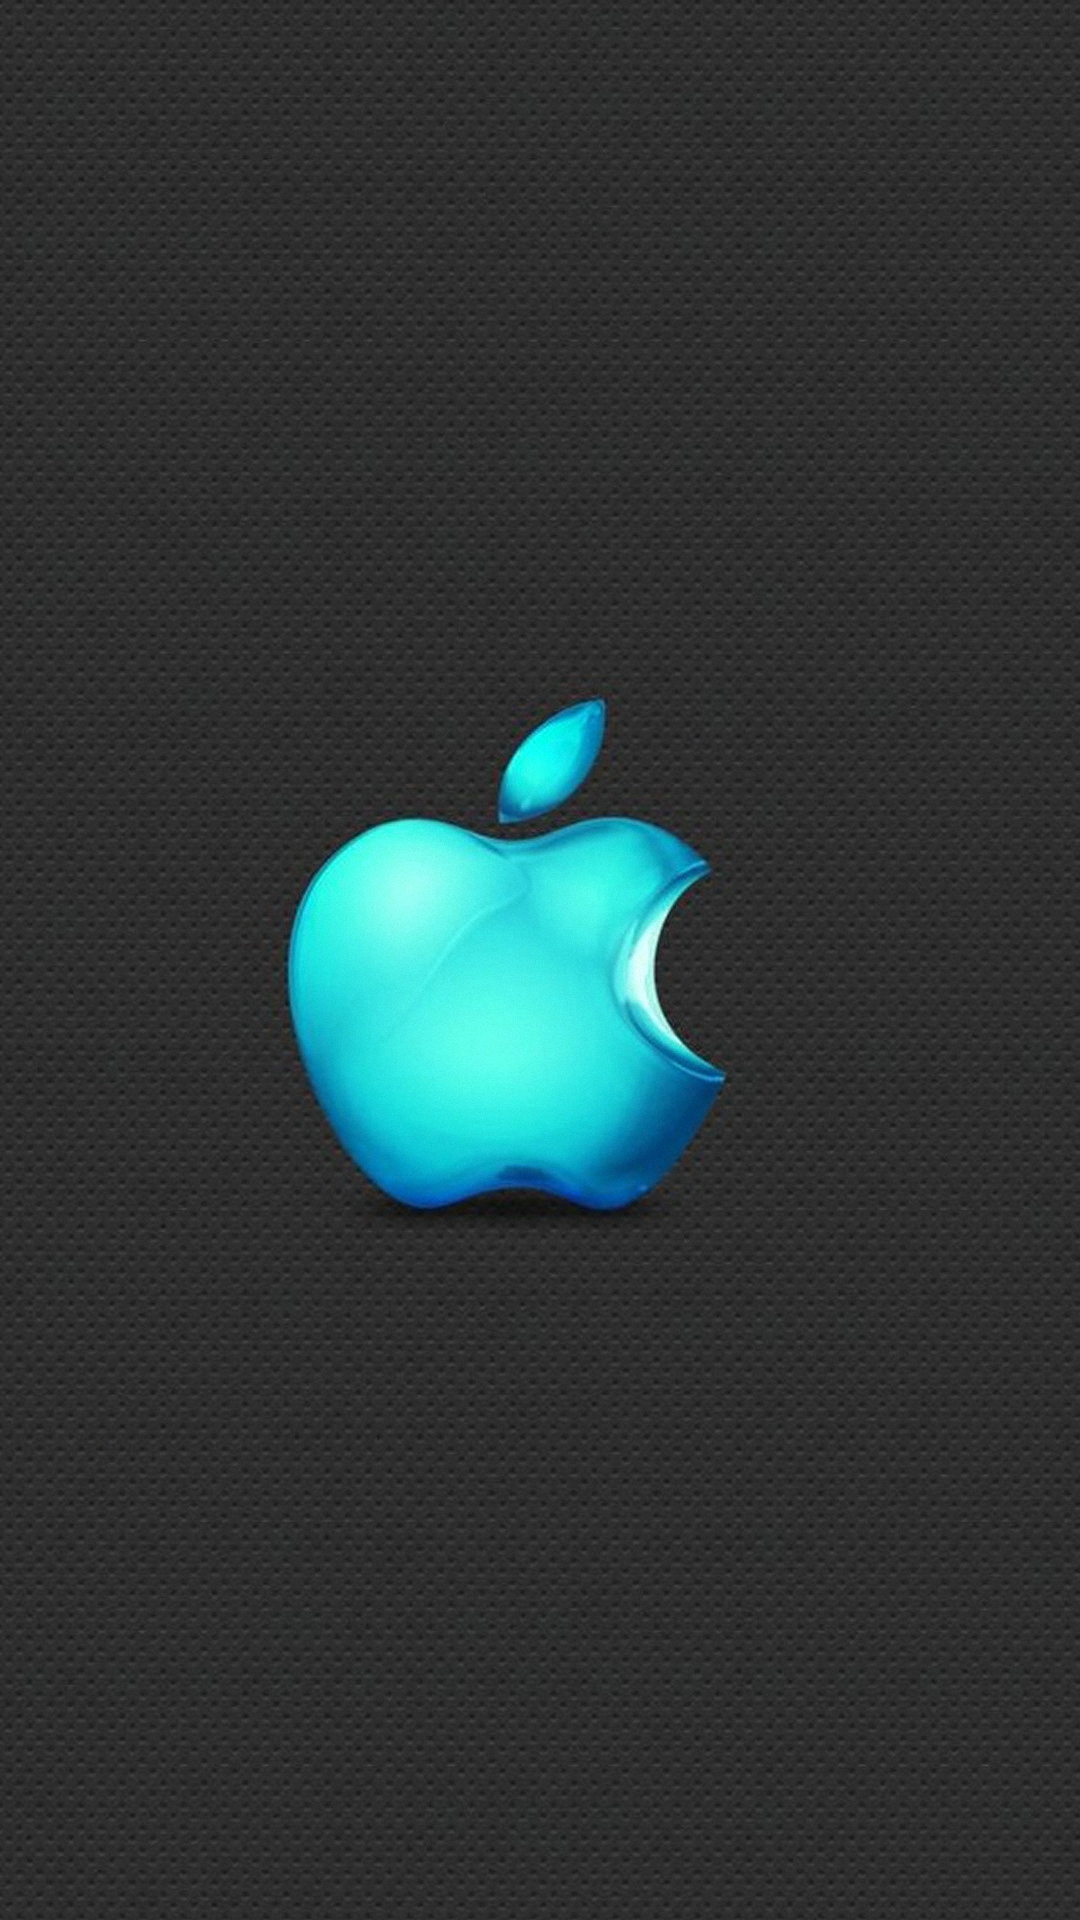 AppleLogo: Biểu tượng của nhãn hiệu công nghệ lớn nhất thế giới - Apple Logo - mang một trọng số đặc biệt với người dùng toàn cầu. Những hình ảnh về loại biểu tượng này sẽ khiến bạn cảm thấy như đang tiến đến bộ phận trái tim của thế giới công nghệ. 